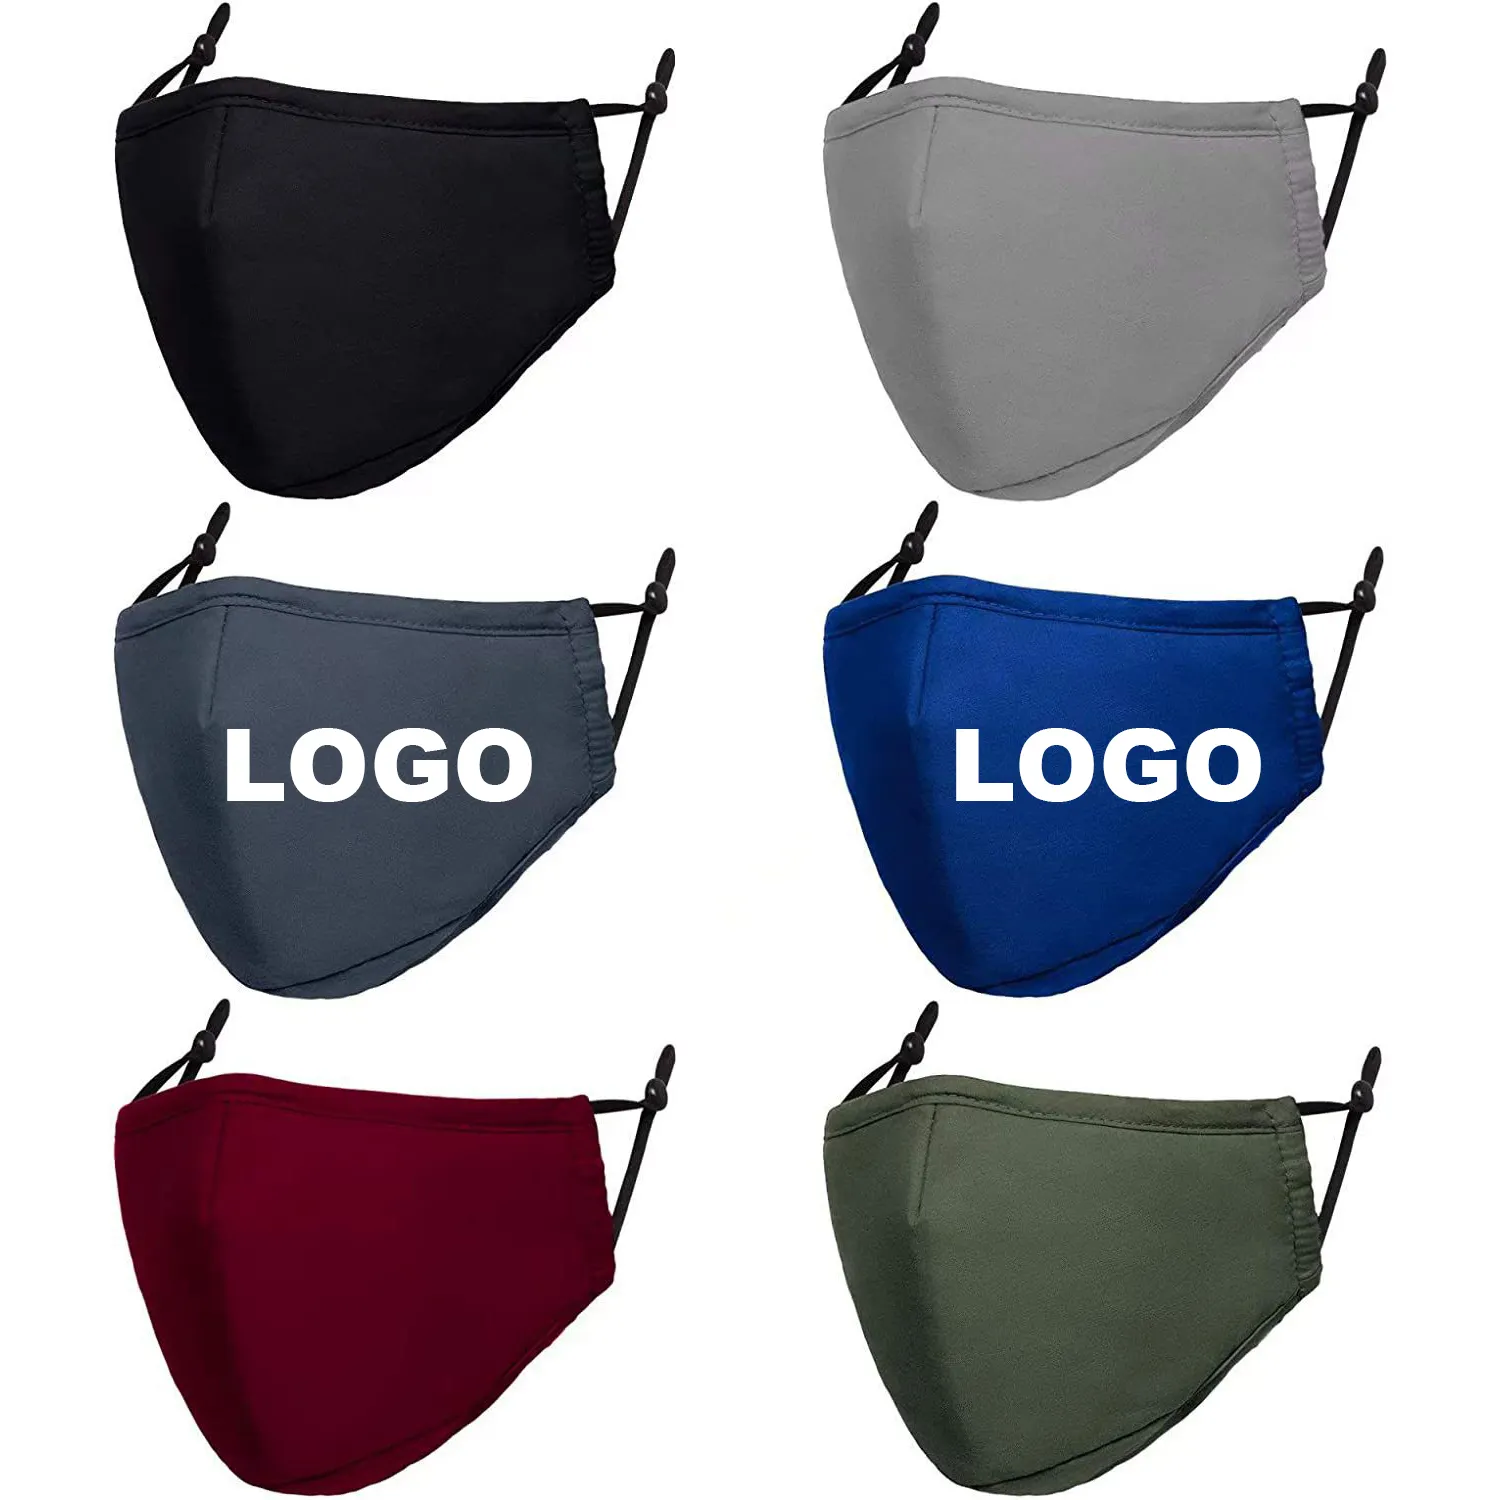 Personalizzato Cotone Poliestere Tessuto Stampato Logo Viso Maskes Riutilizzabile Lavabile Regolabile Maskes per le Donne Degli Uomini